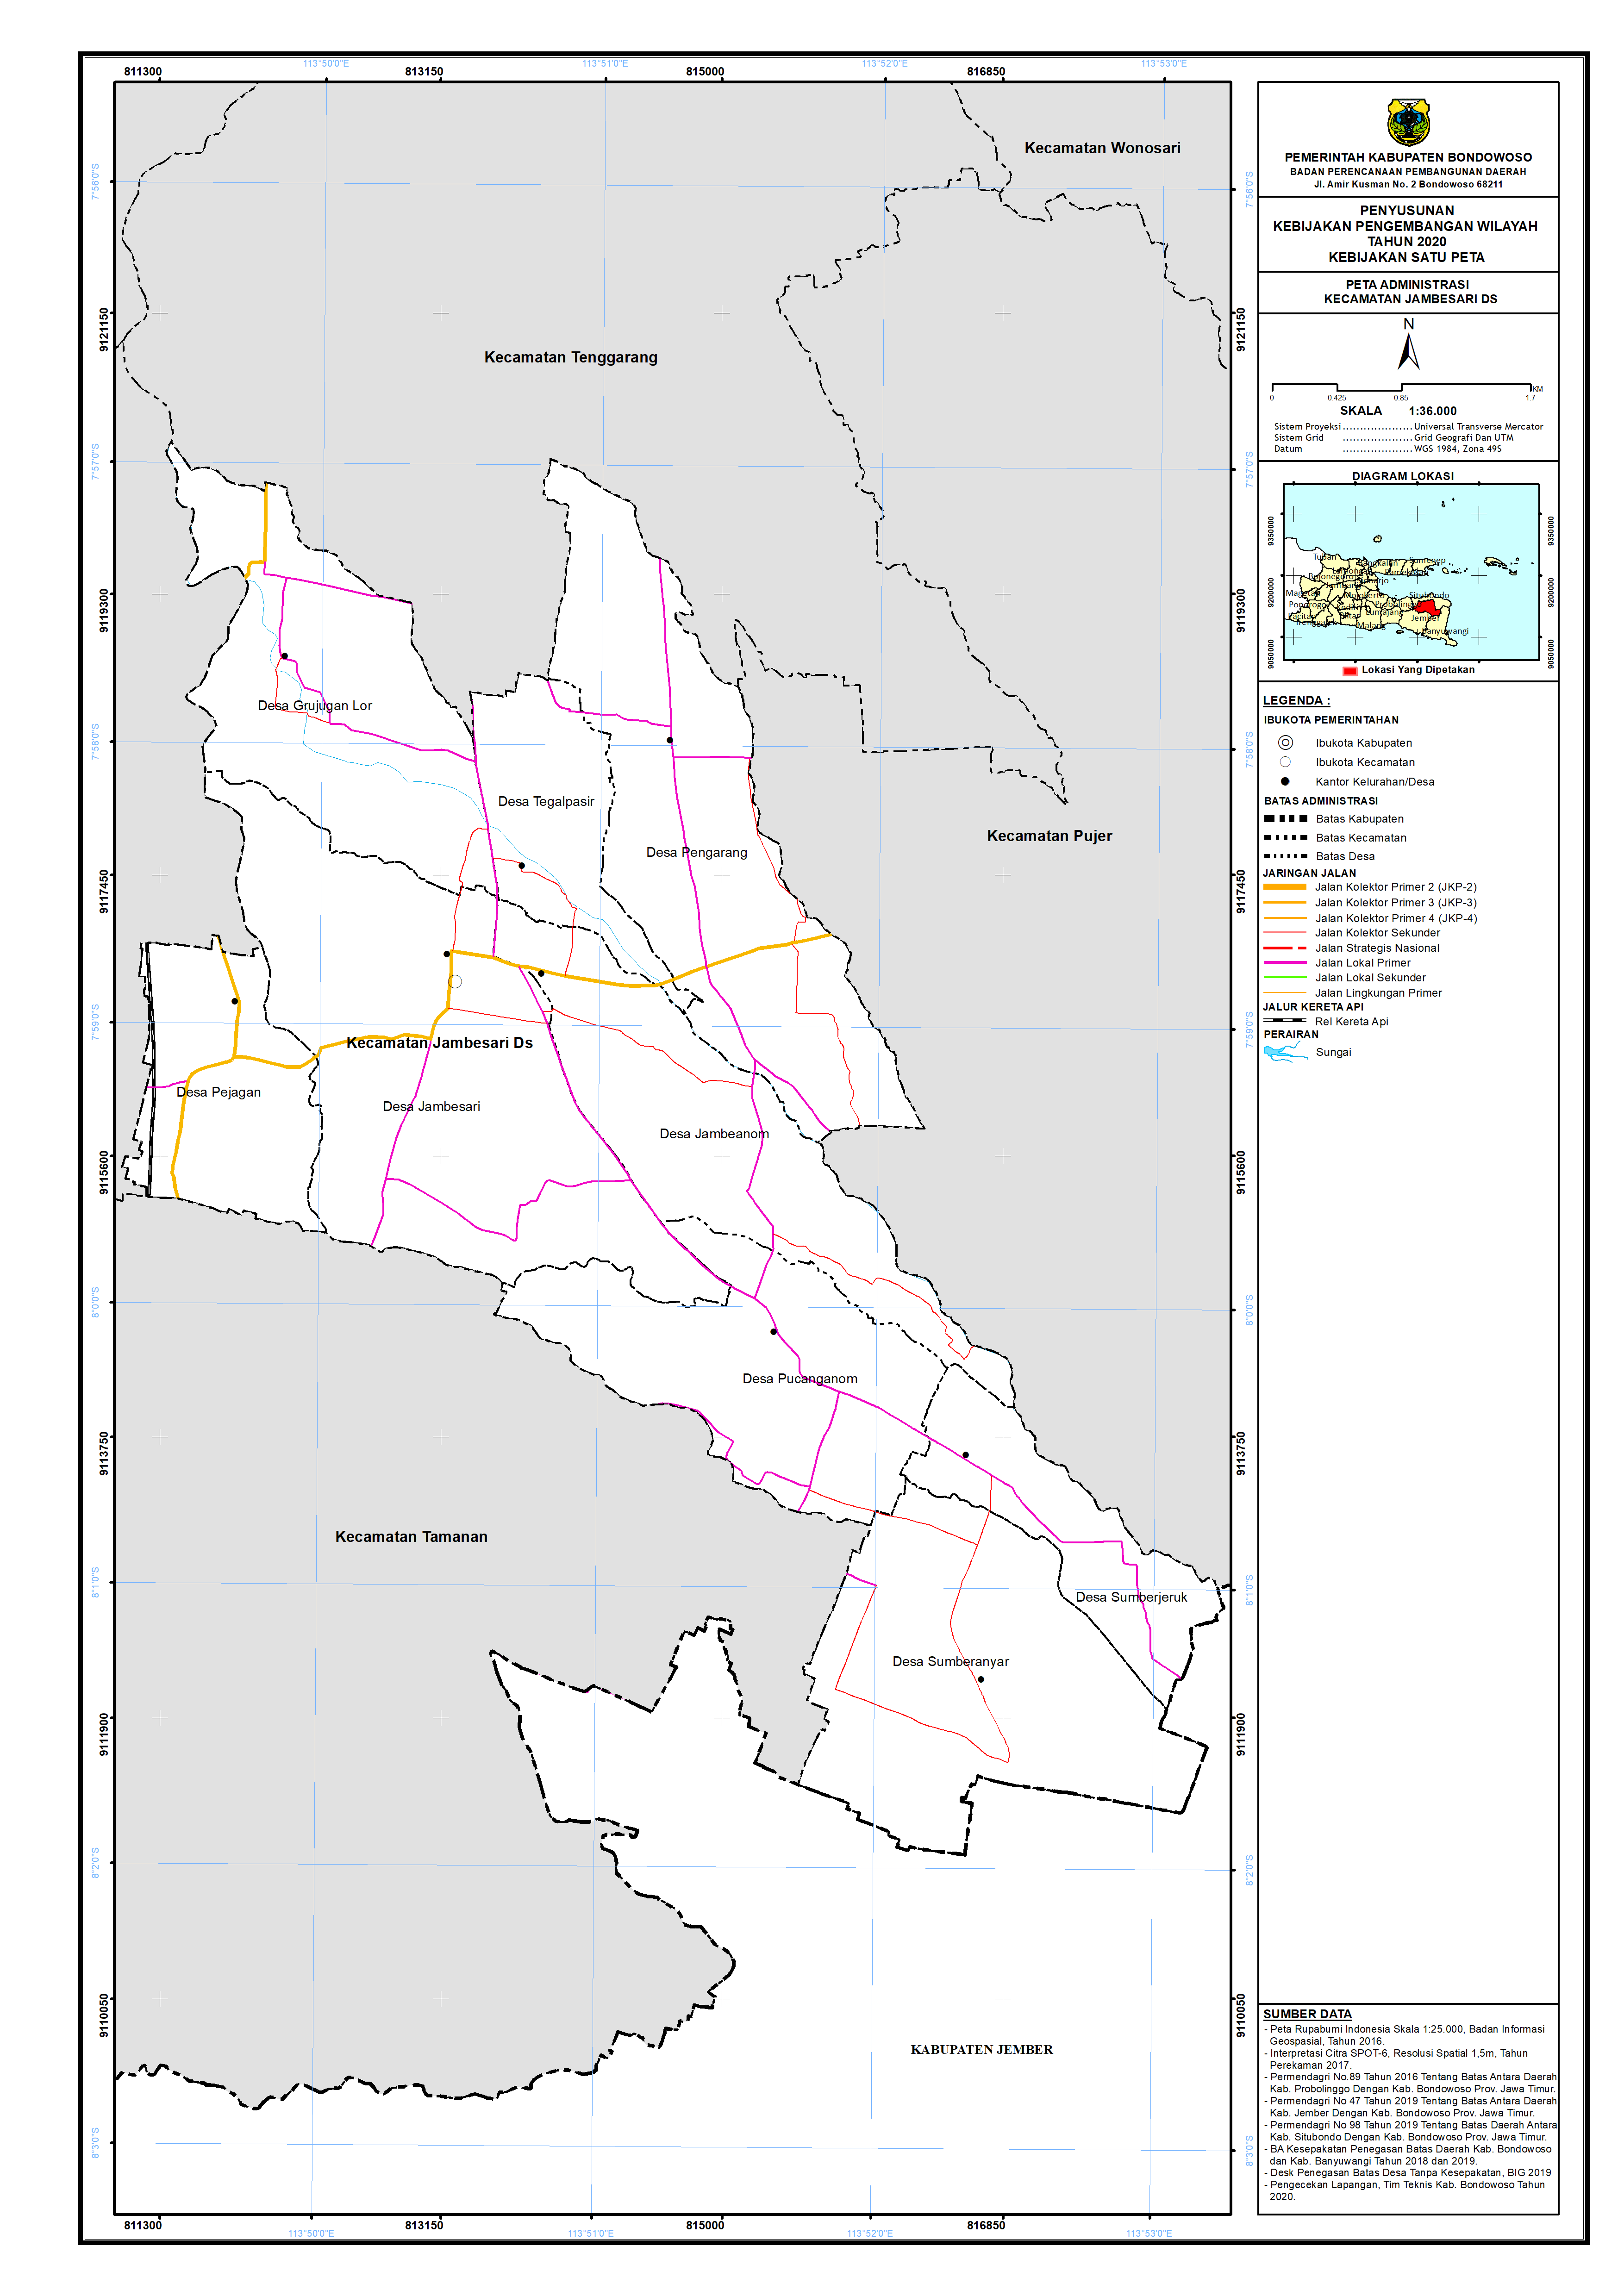 Peta Batas Administrasi Kecamatan Jambesari Darussolah.png